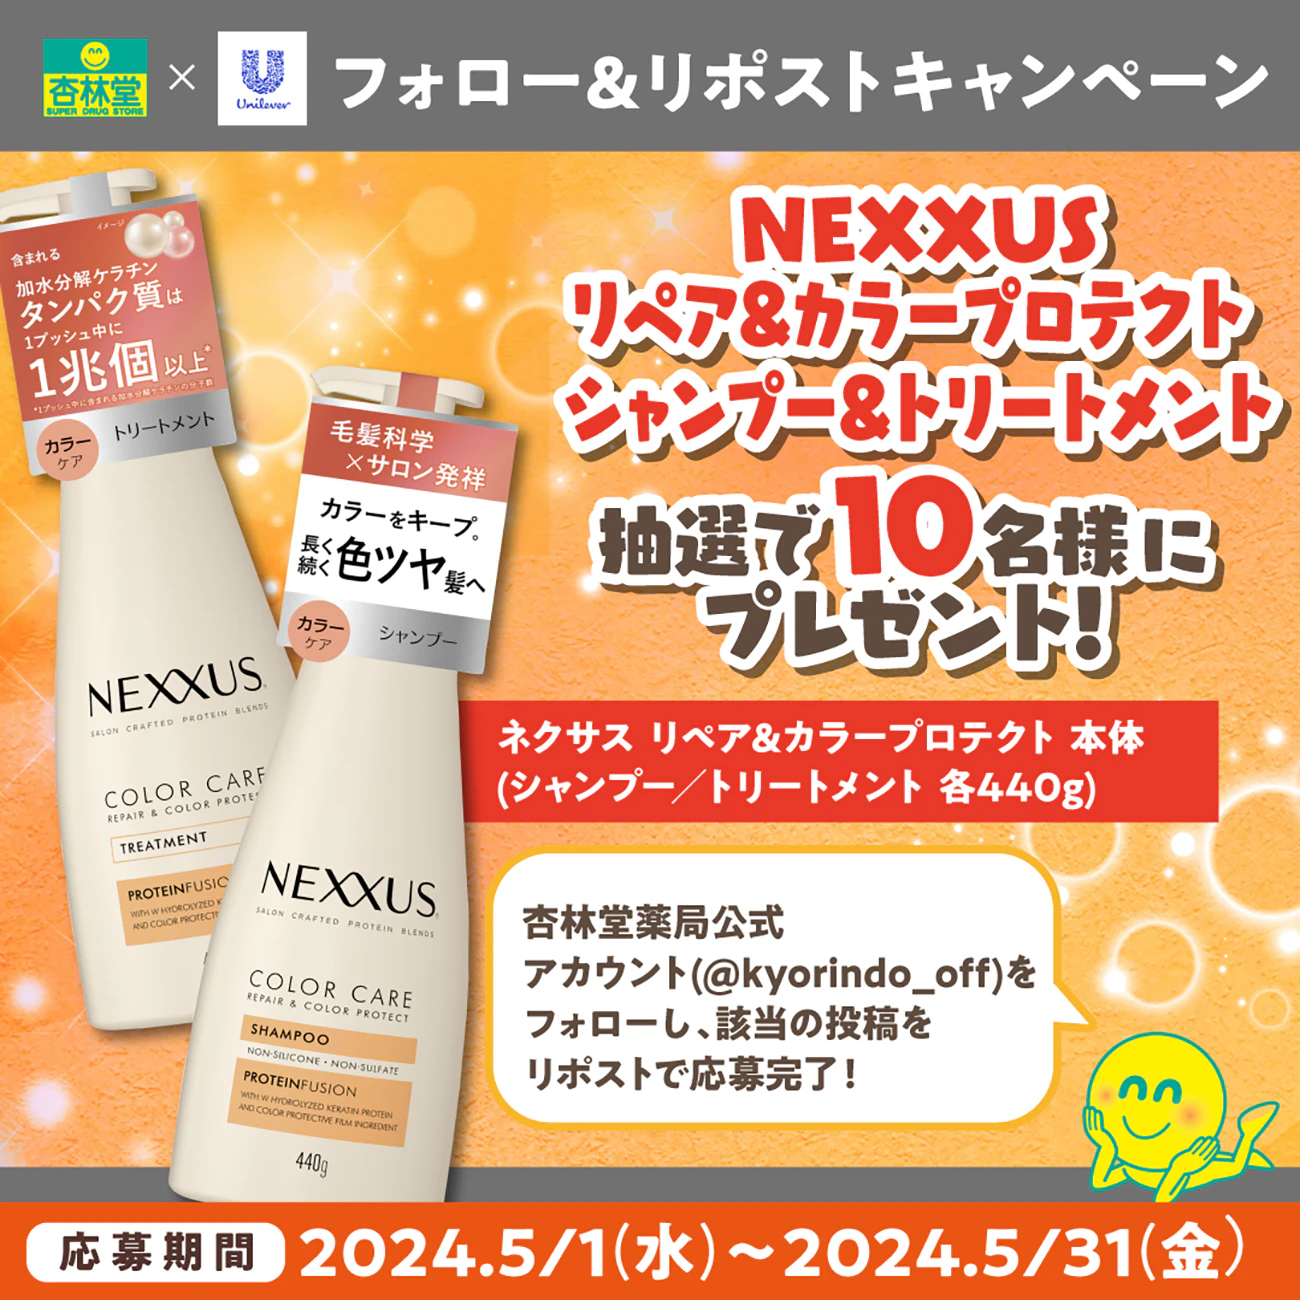 【X限定企画】NEXXUS(ネクサス) リペアアンドカラープロテクト シャンプー&トリートメント Xフォロー＆リポスト プレゼントキャンペーン